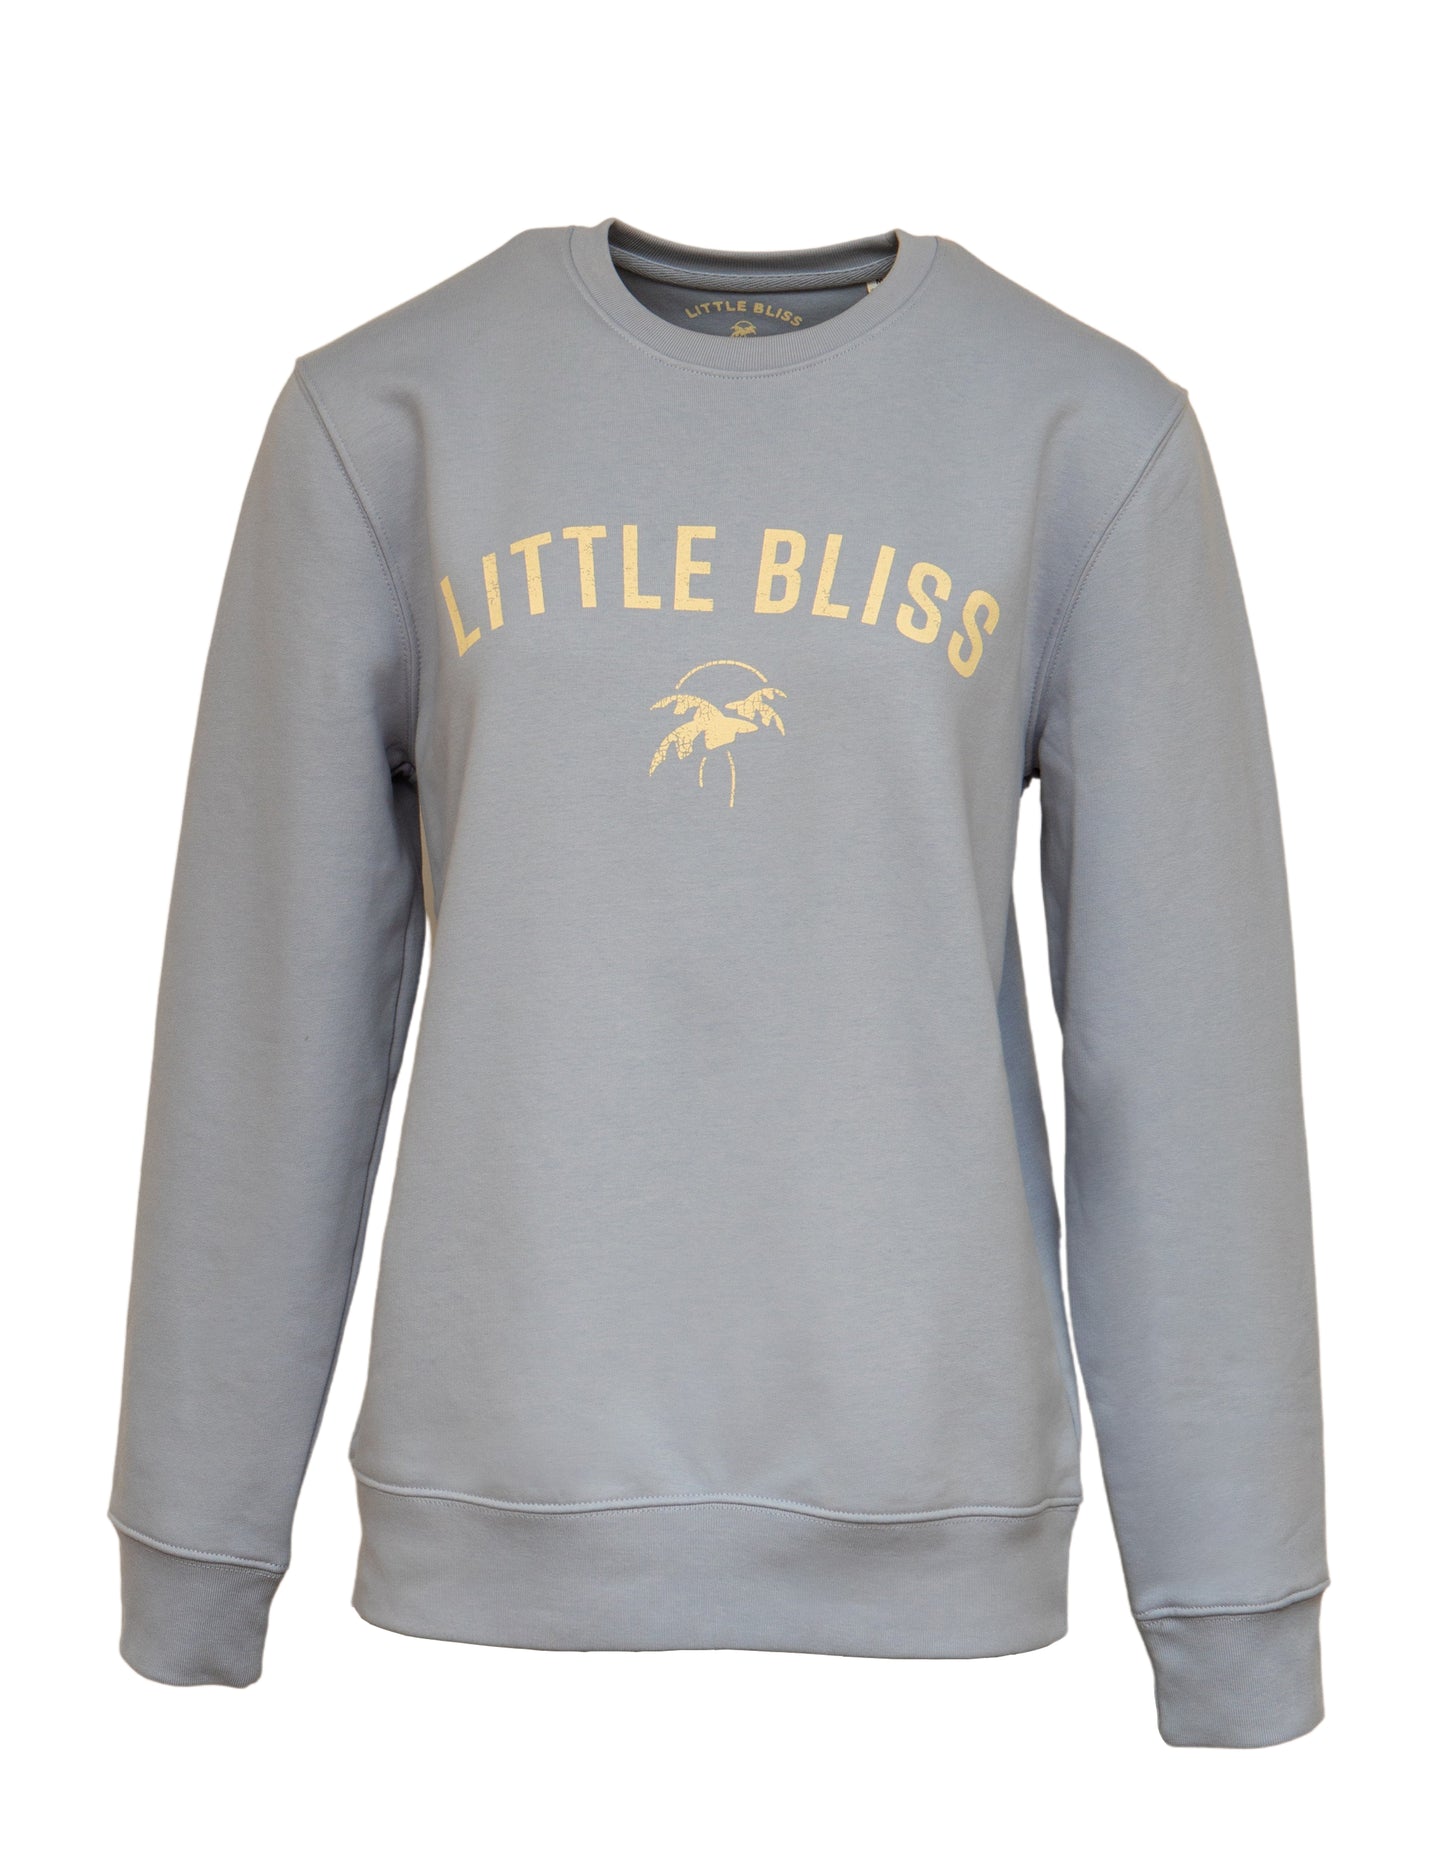 The Little Bliss Sweatshirt in Powder Blue